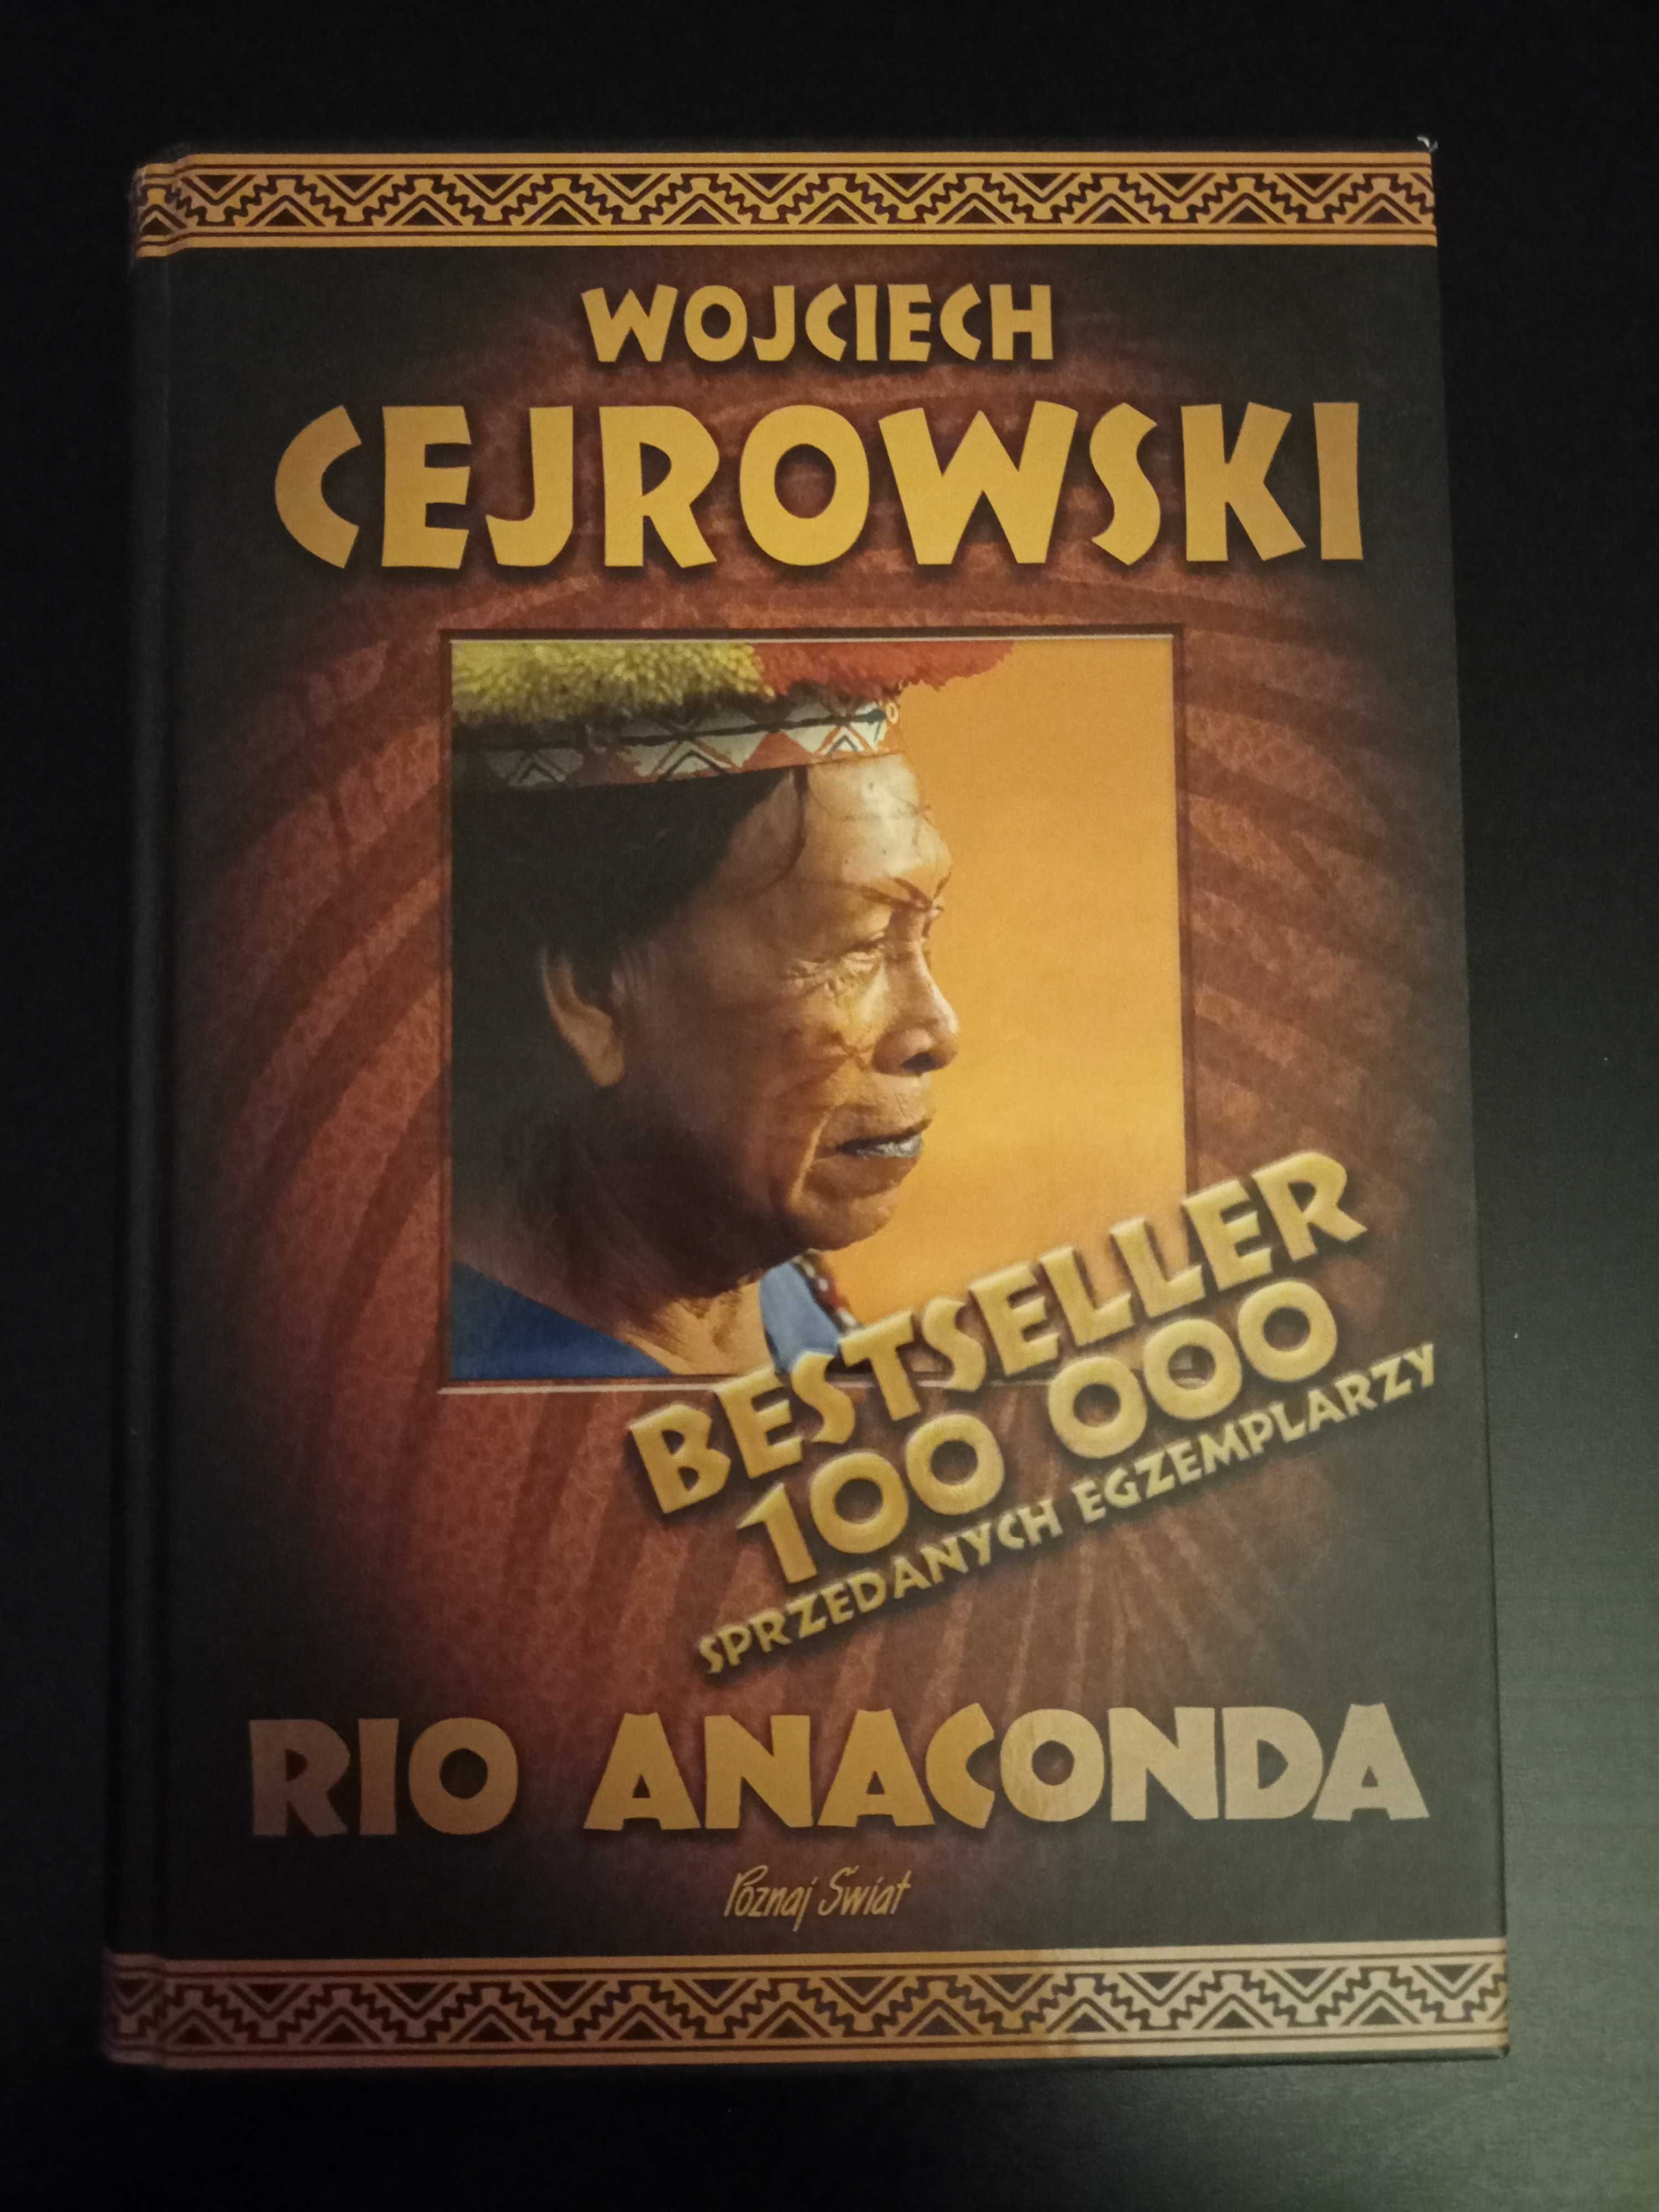 Książka - Wojciech Cejrowski - "Rio Anaconda"